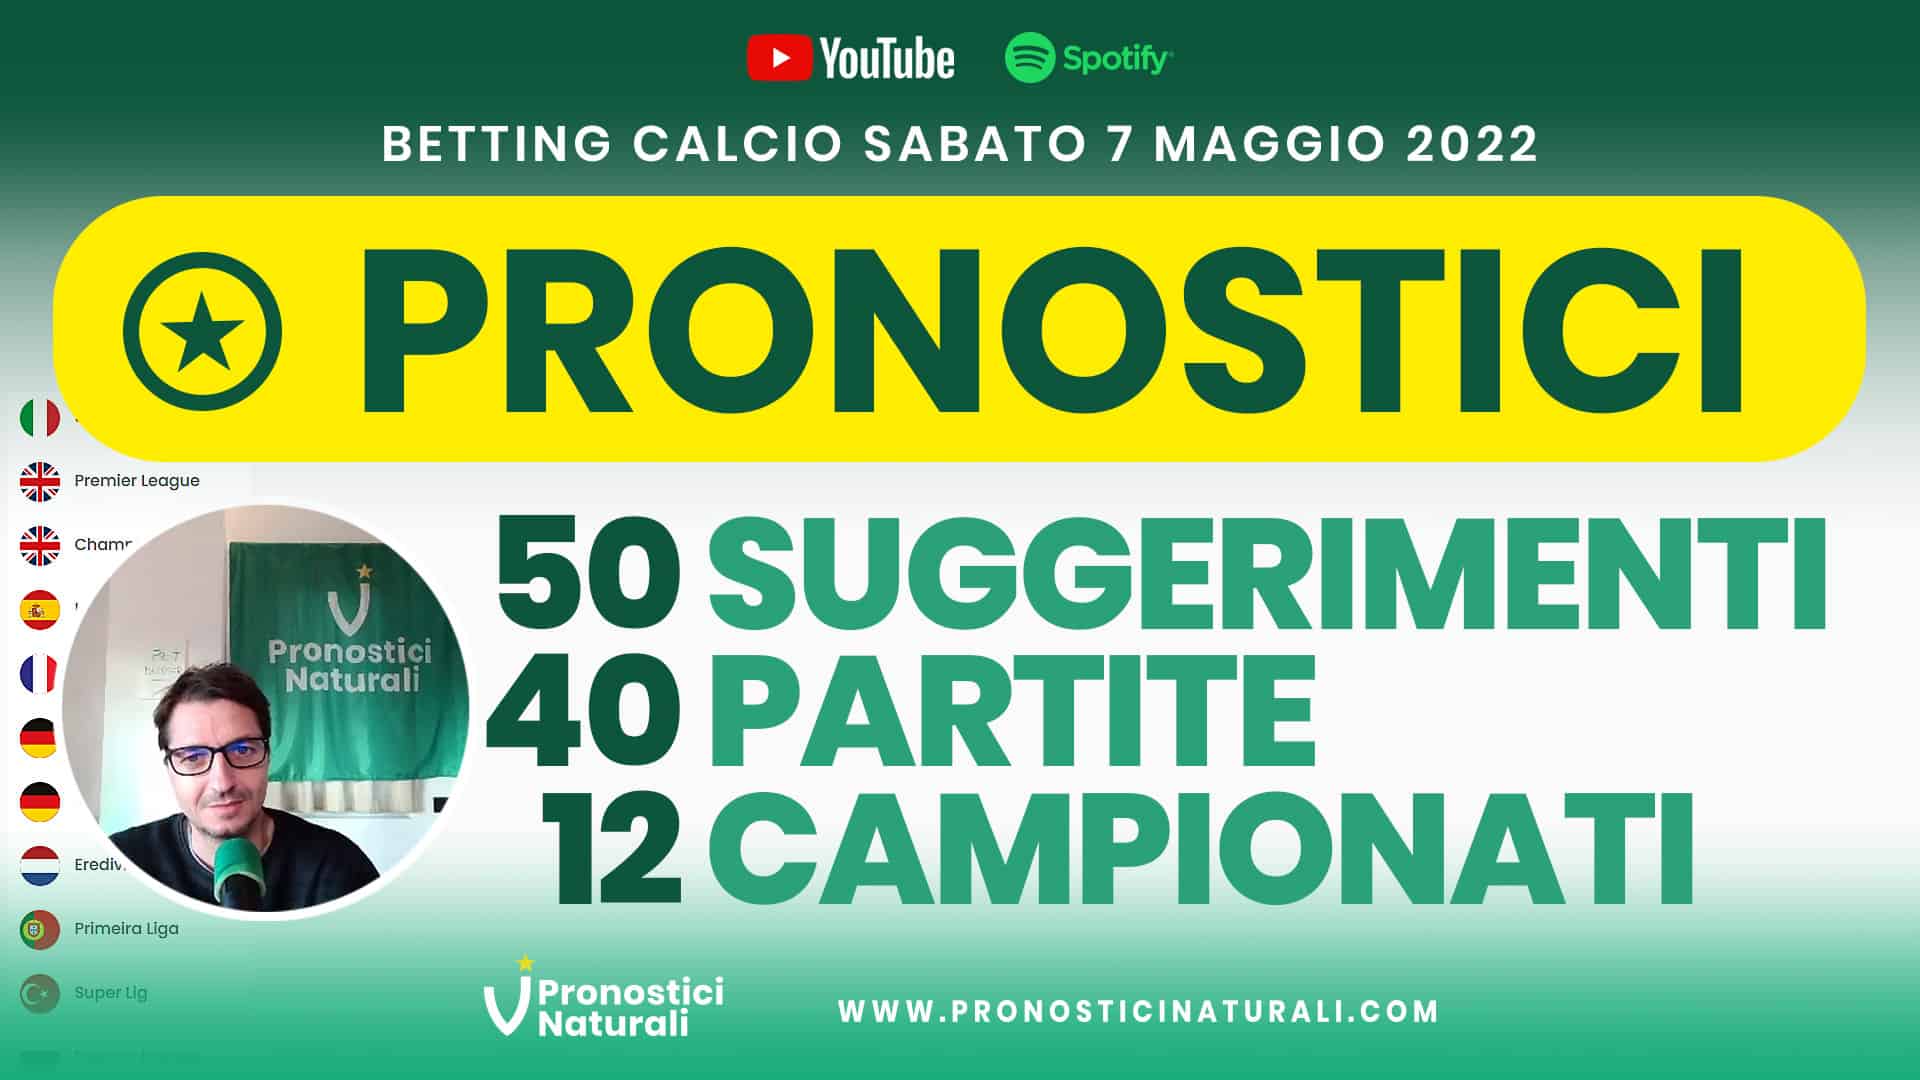 Pronostici Naturali Video Analisi Scommesse Betting Calcio Analisi Pre Partite Sabato 7 Maggio 2022